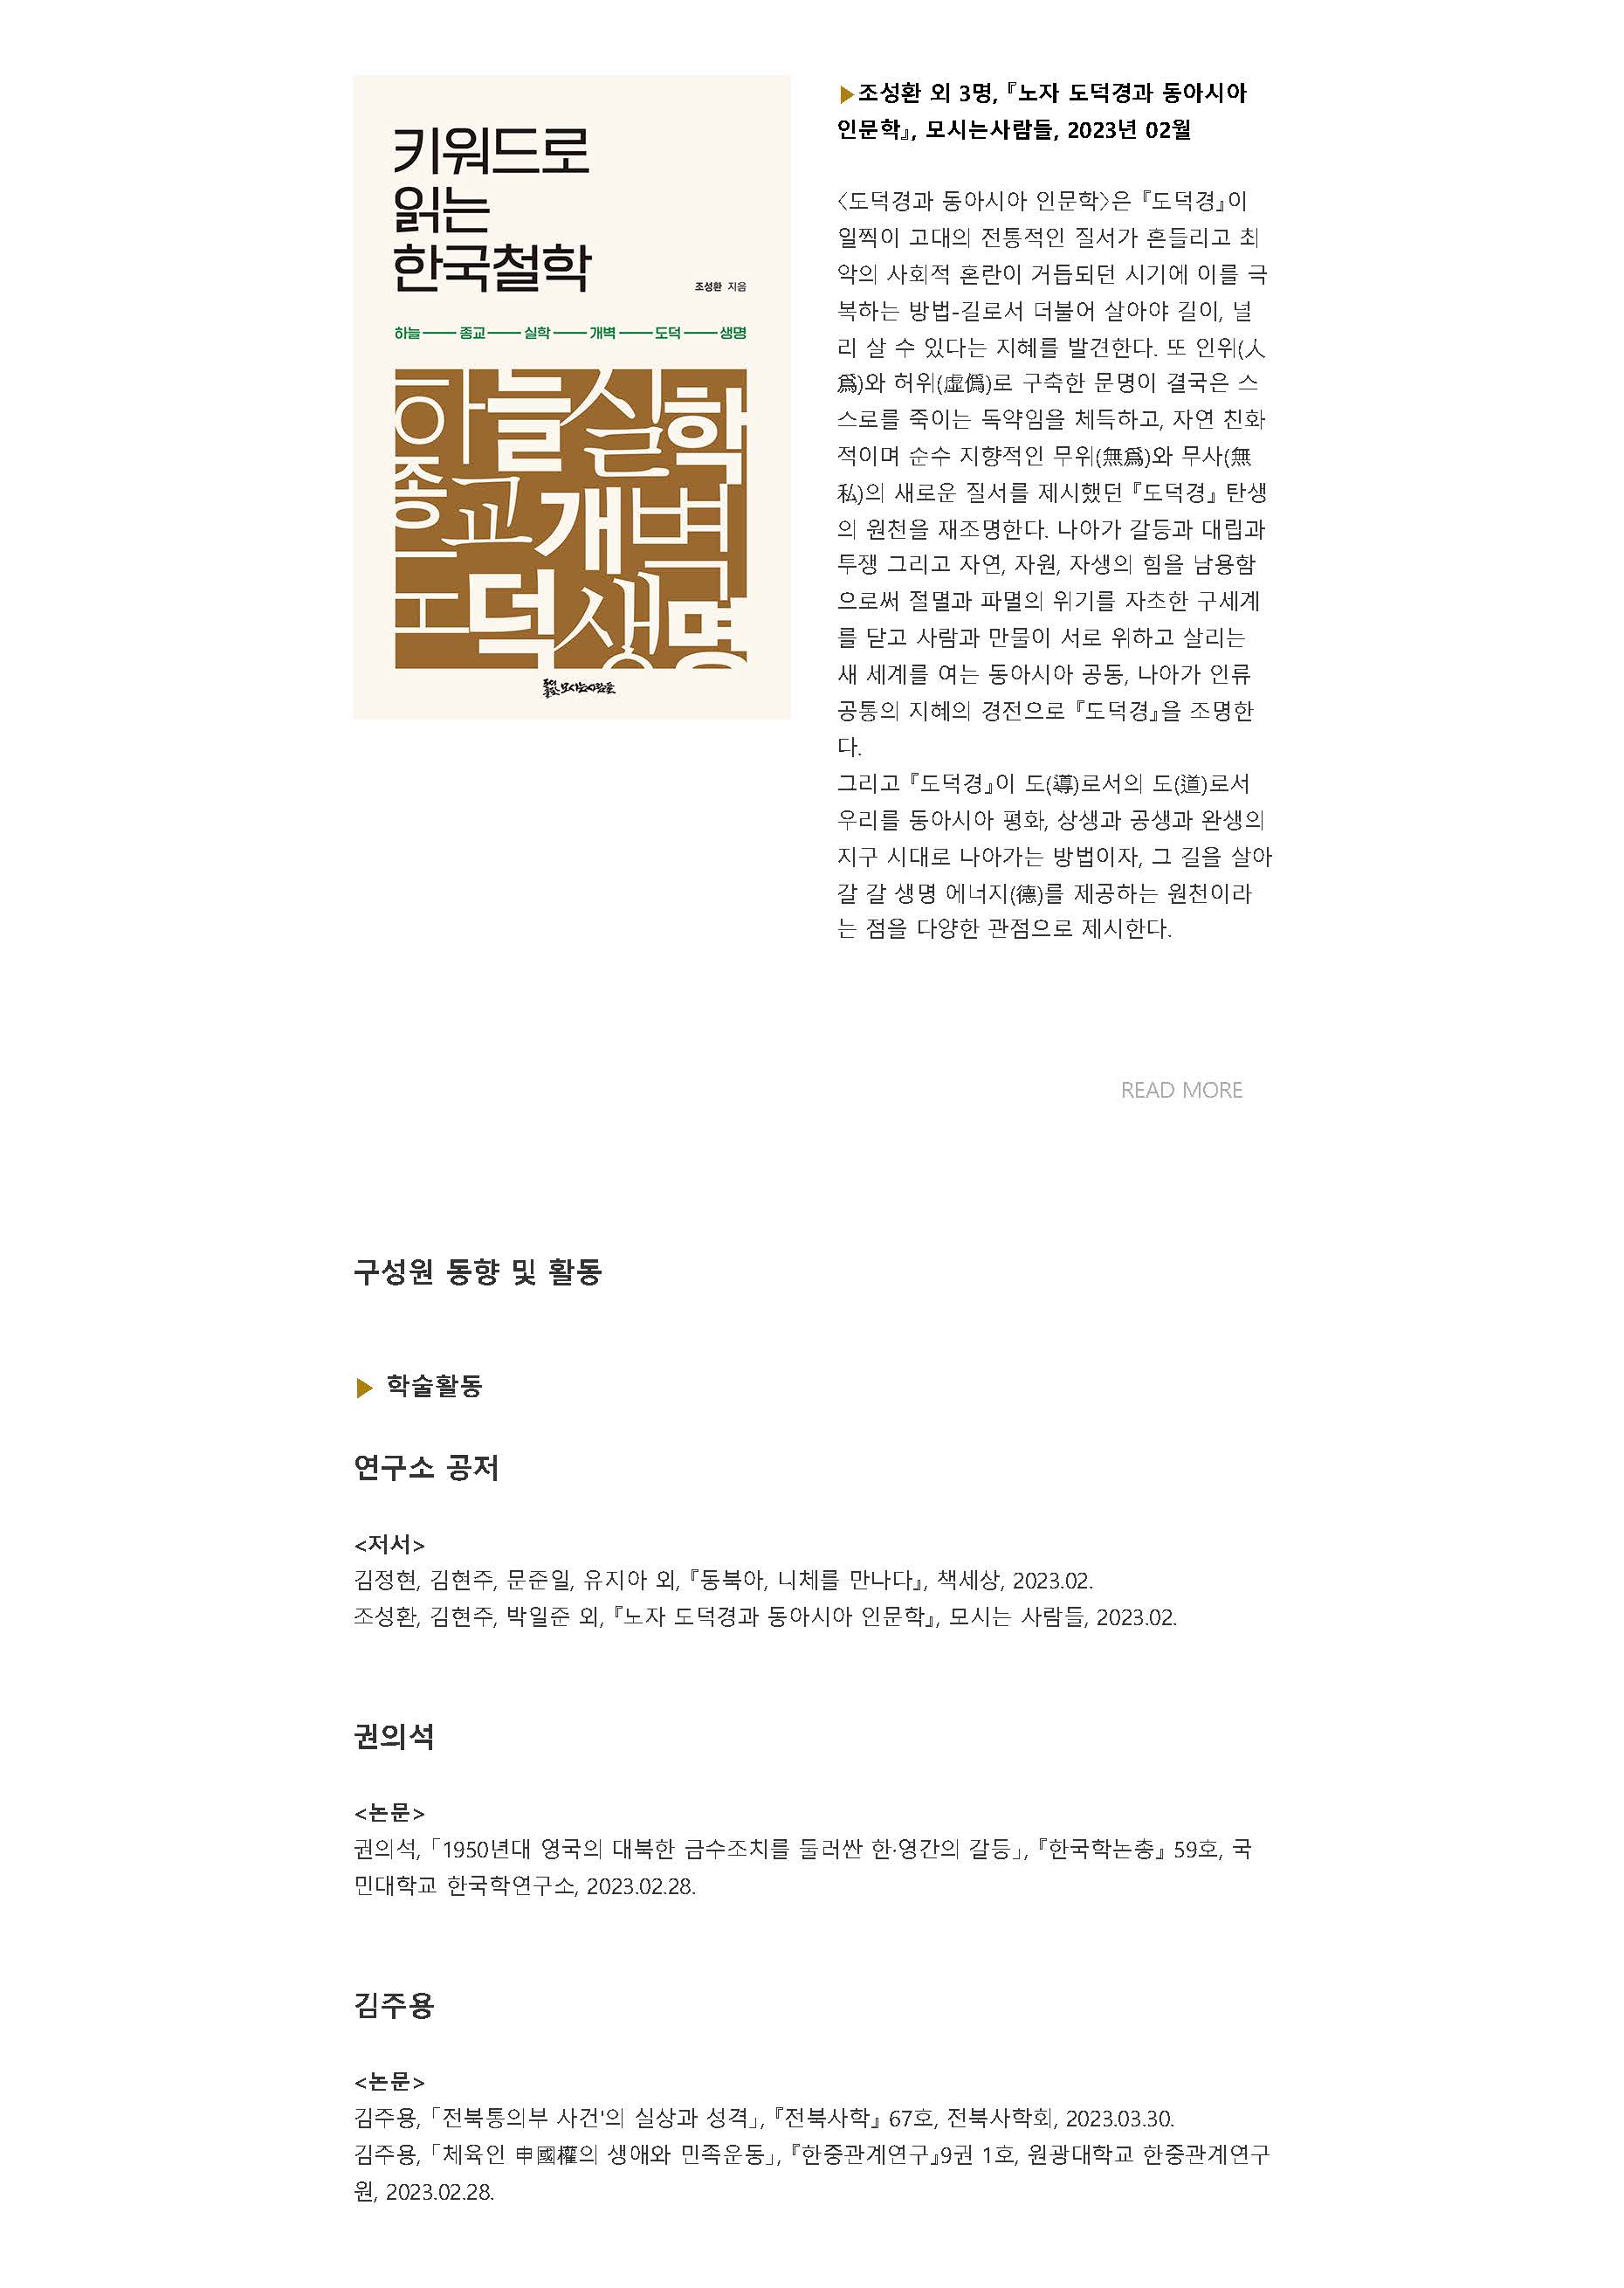 원광대 HK+ 동북아시아인문사회연구소 뉴스레터 VOL.14_페이지_06.jpg